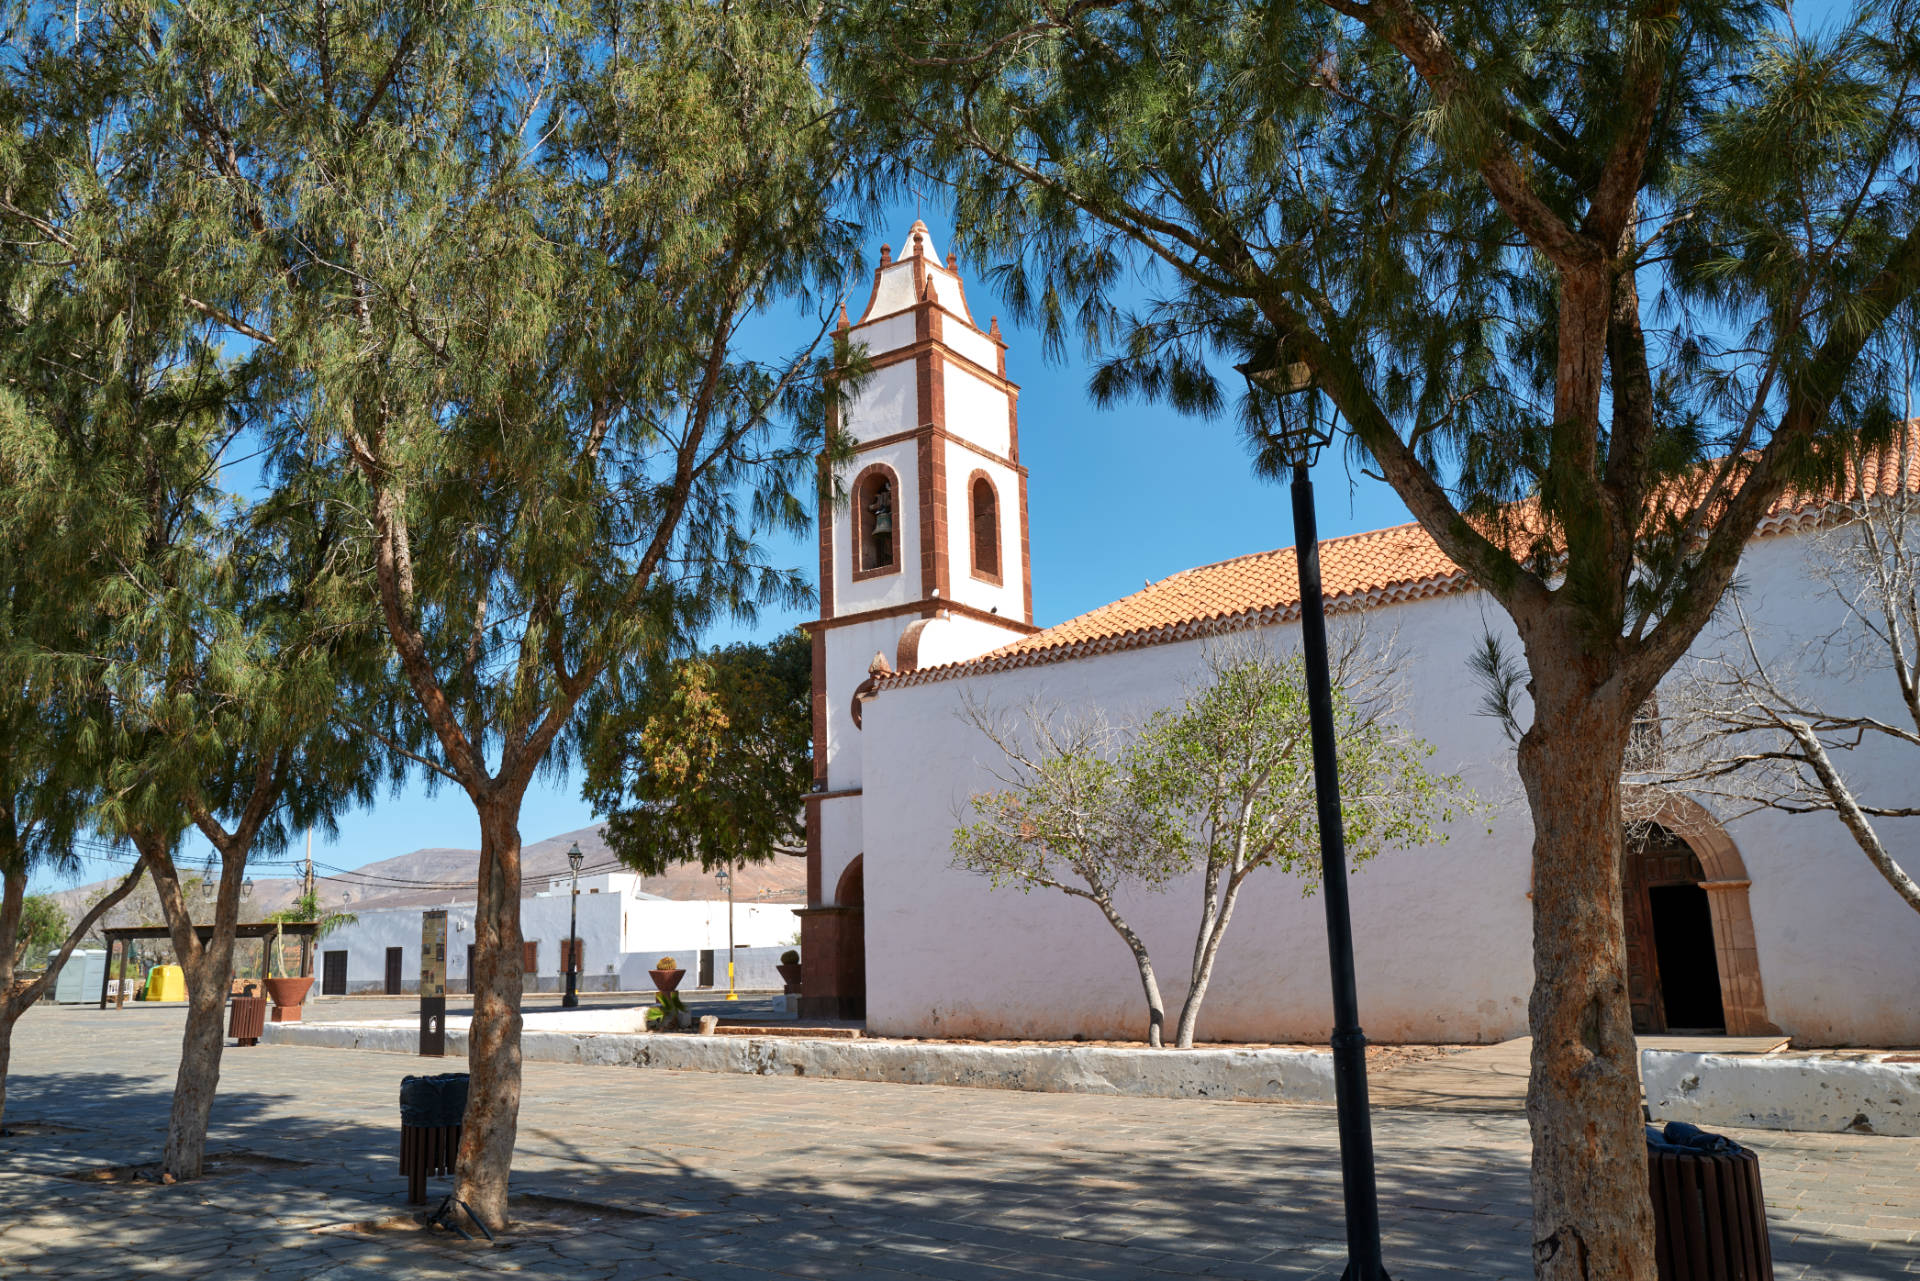 Iglesia Santo Domingo de Guzmán in Tetir.